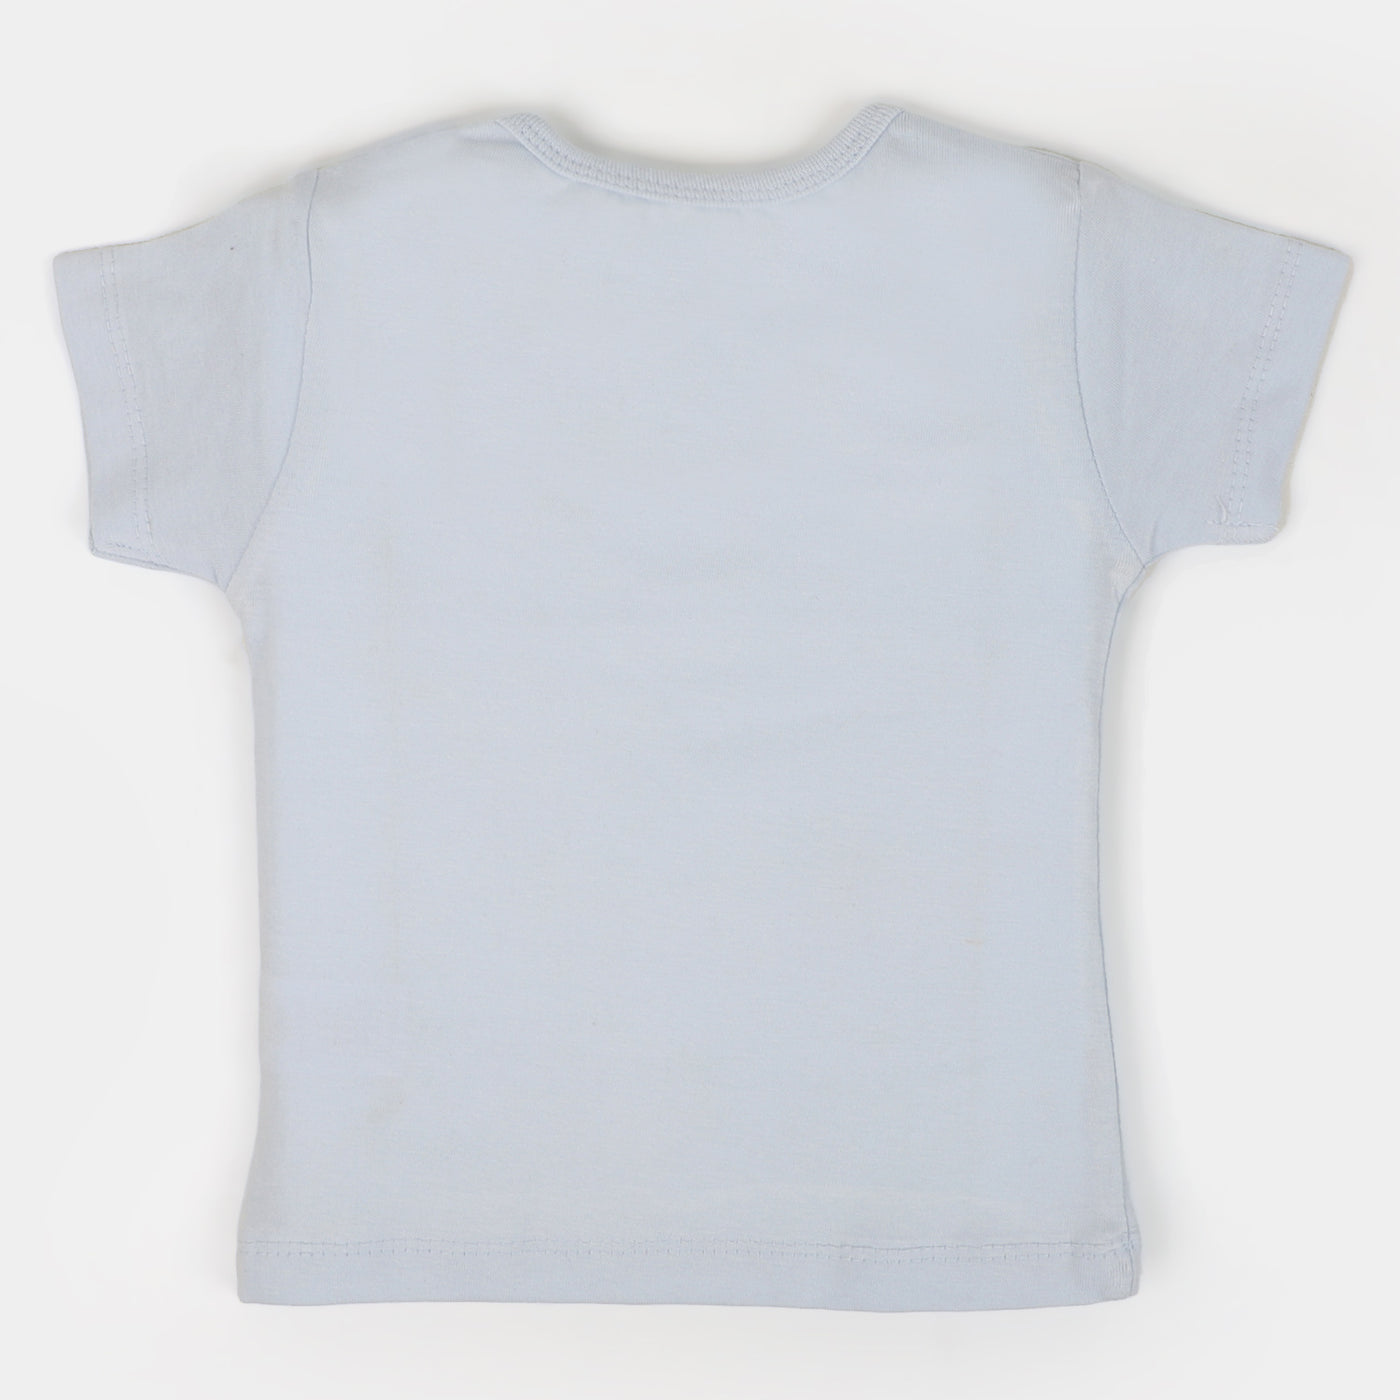 Infant Boys Cotton T-Shirt Super Good